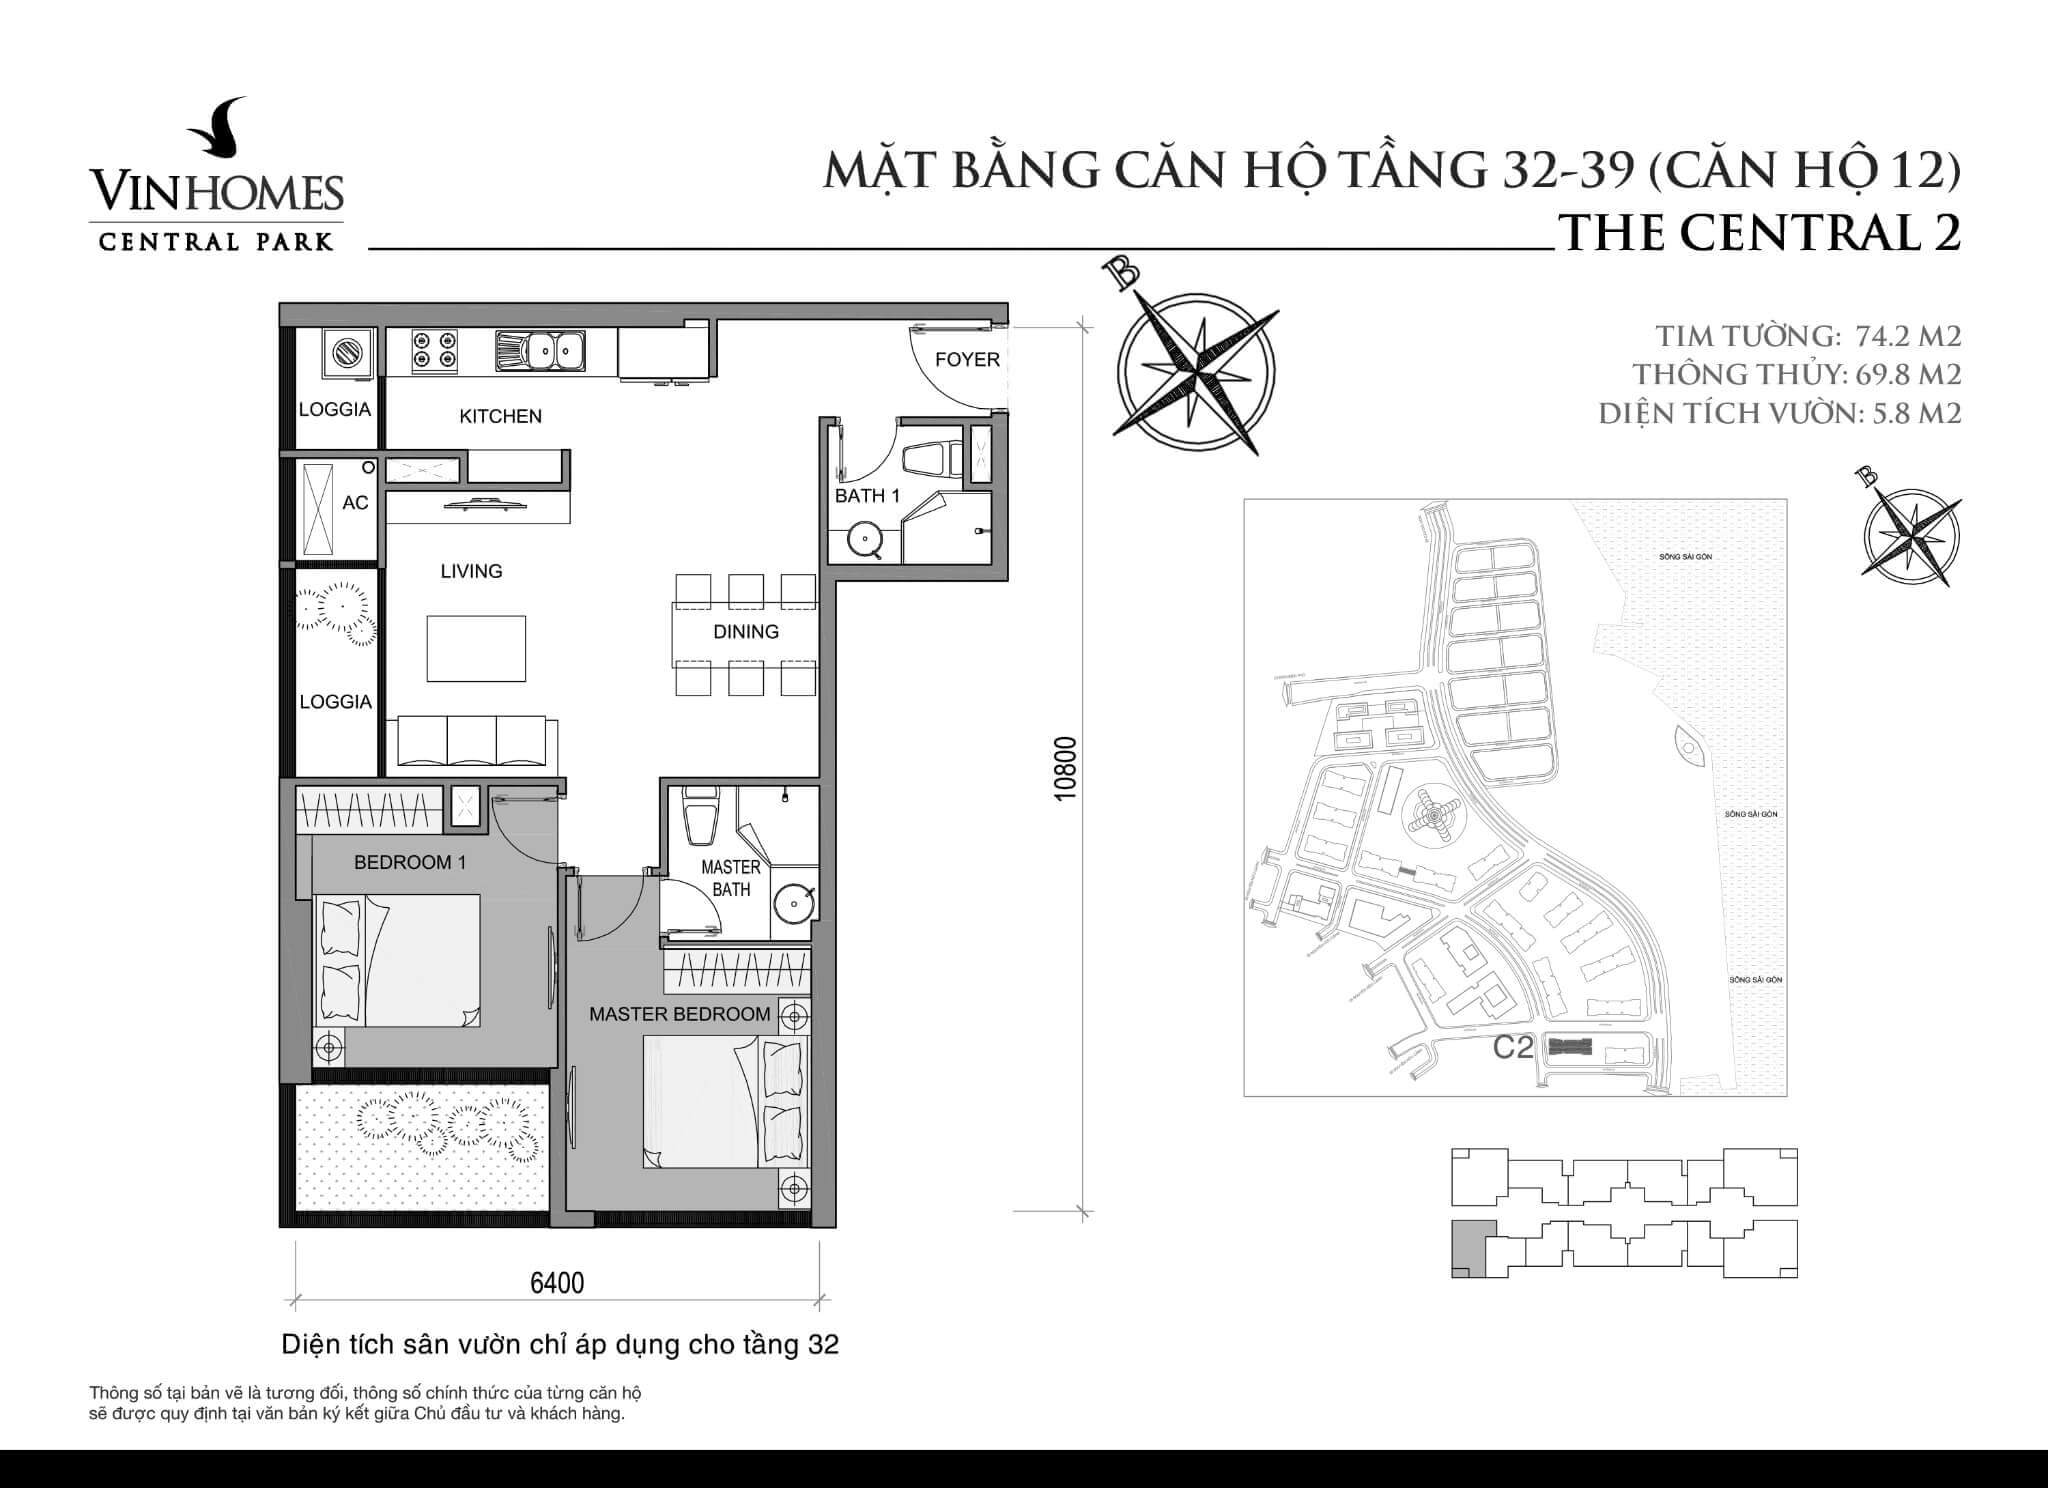 layout căn hộ số 12 tầng 32-39 Central 2